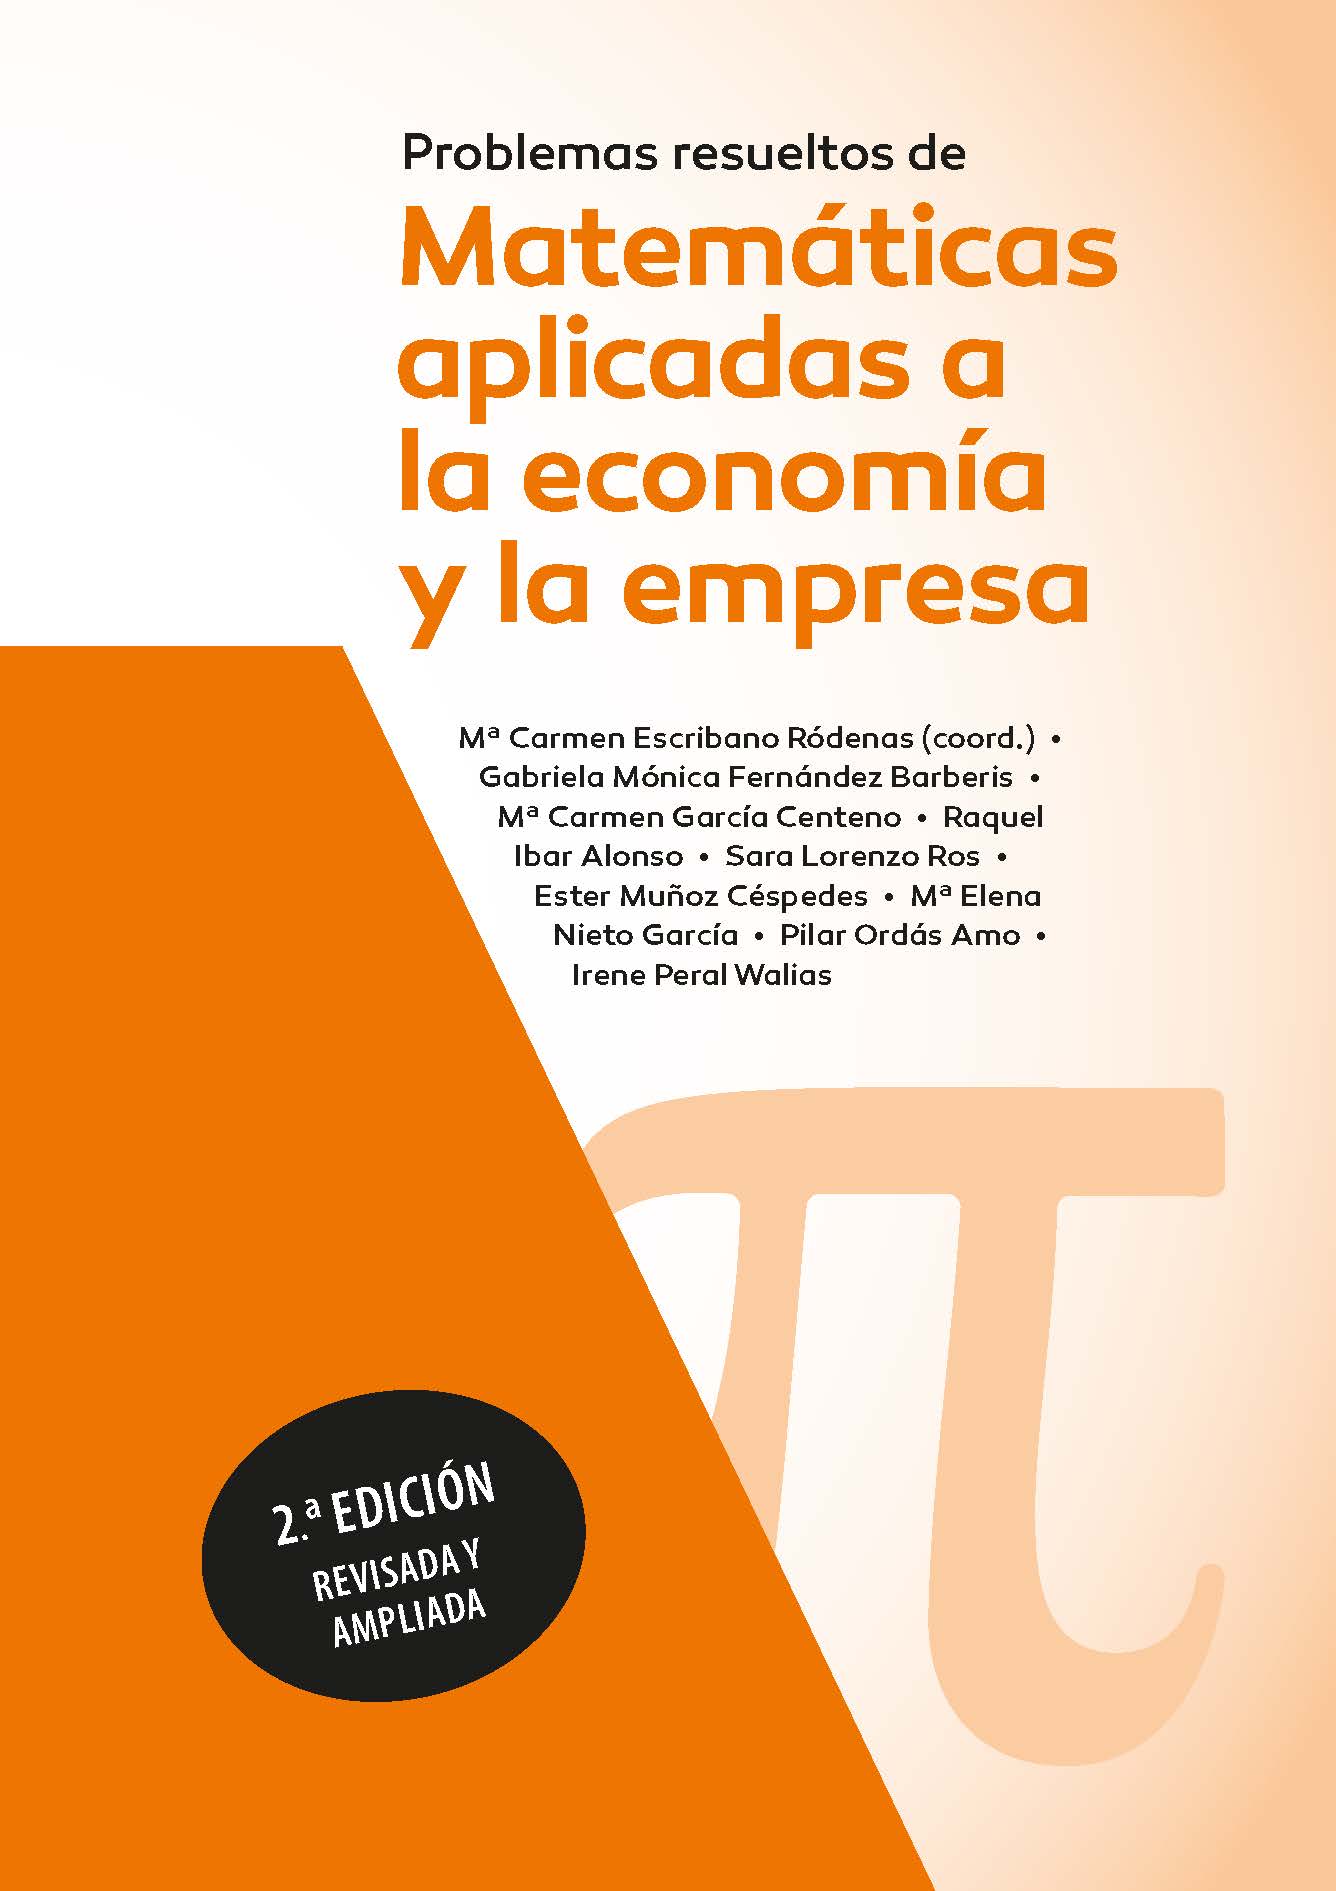 Problemas resueltos de matemáticas aplicadas a la economía y a la empresa. 2ª edición revisada y ampliada